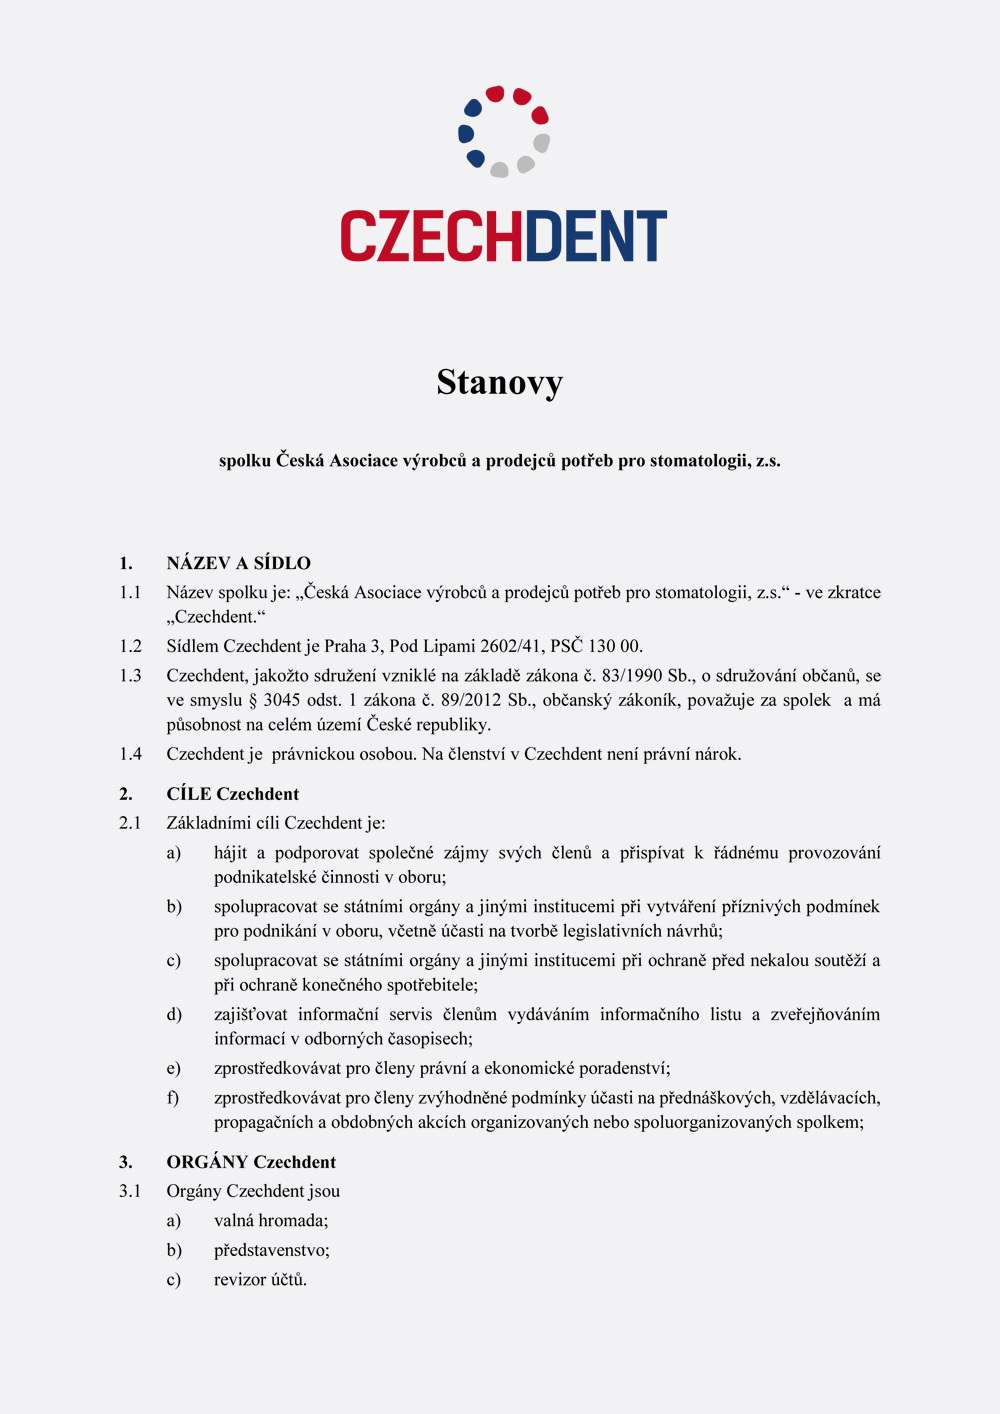 Stanovy Czechdent